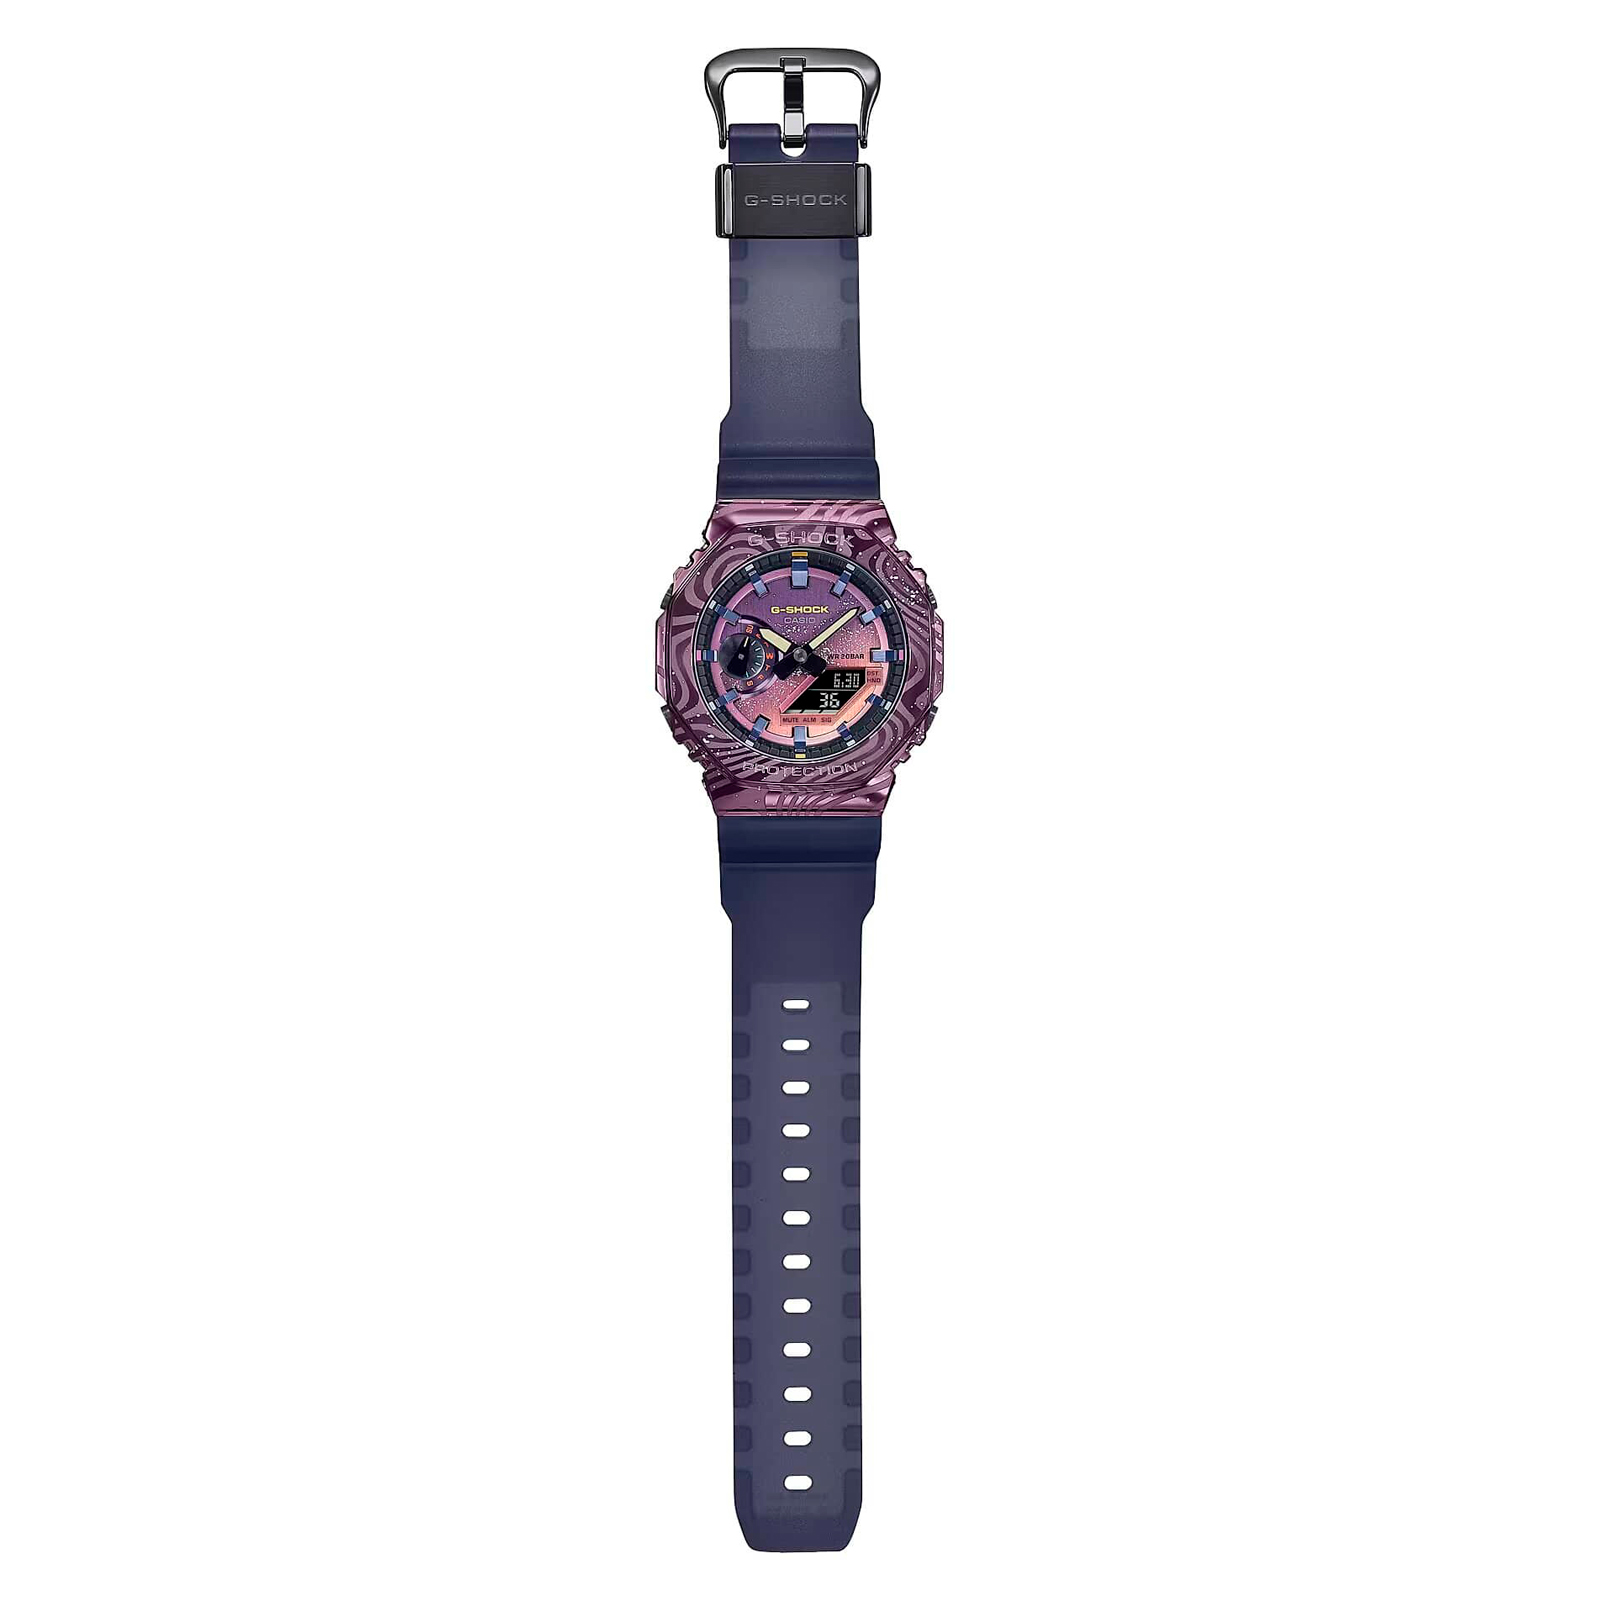 Reloj G-SHOCK GM-2100MWG-1A Resina/Acero Hombre Negro/Purpura